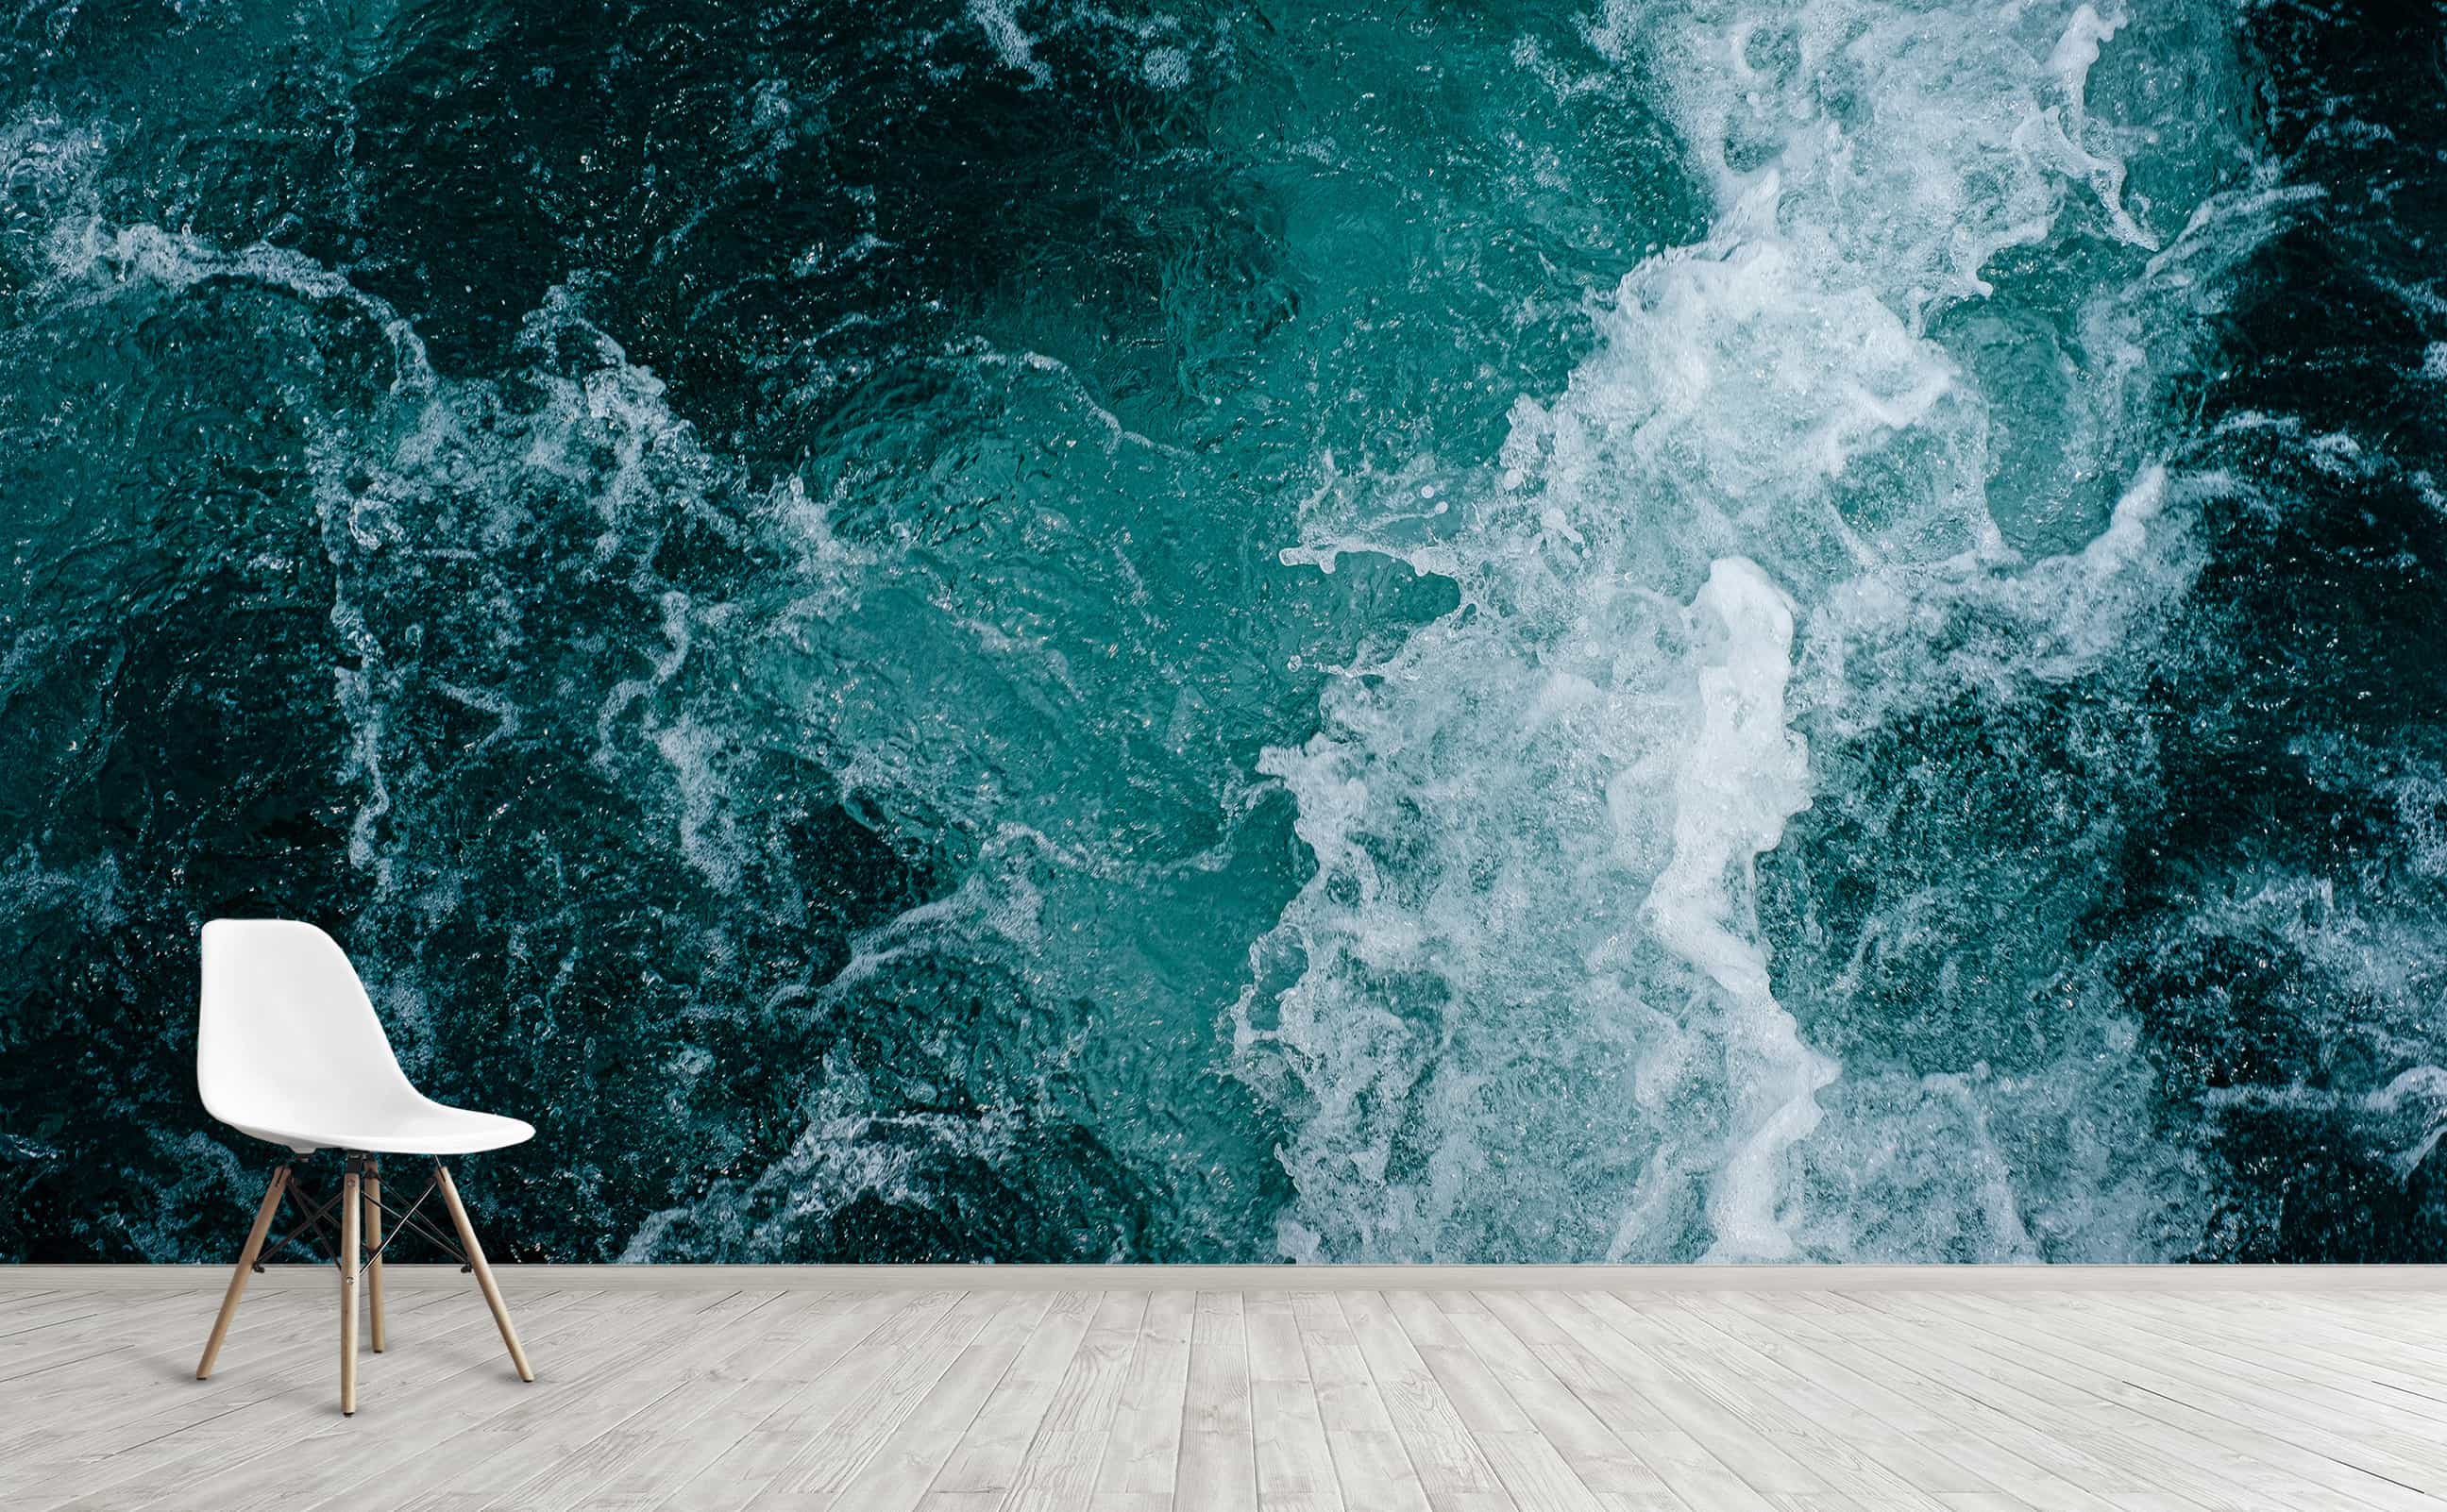 Dark Teal Ripples in Water Wallpaper, Sea Photo Wallpaper, Marine Mural  Self Adhesive, Peel & Stick, Removable Wallpaper 